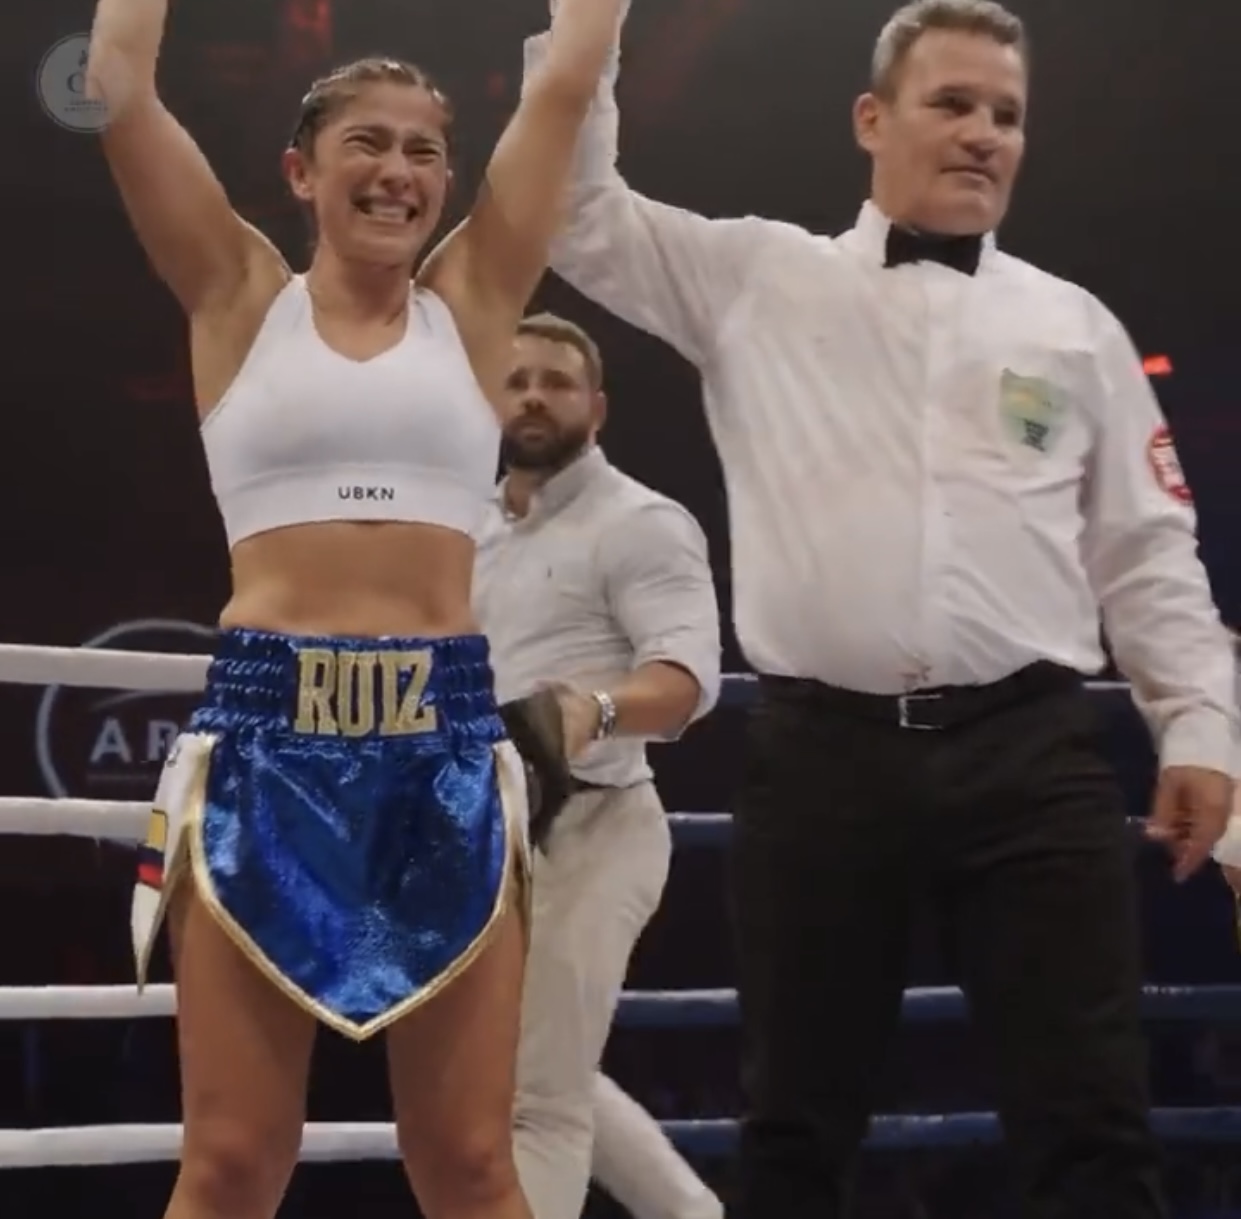 Viviana Ruiz won the WBA Oceania belt